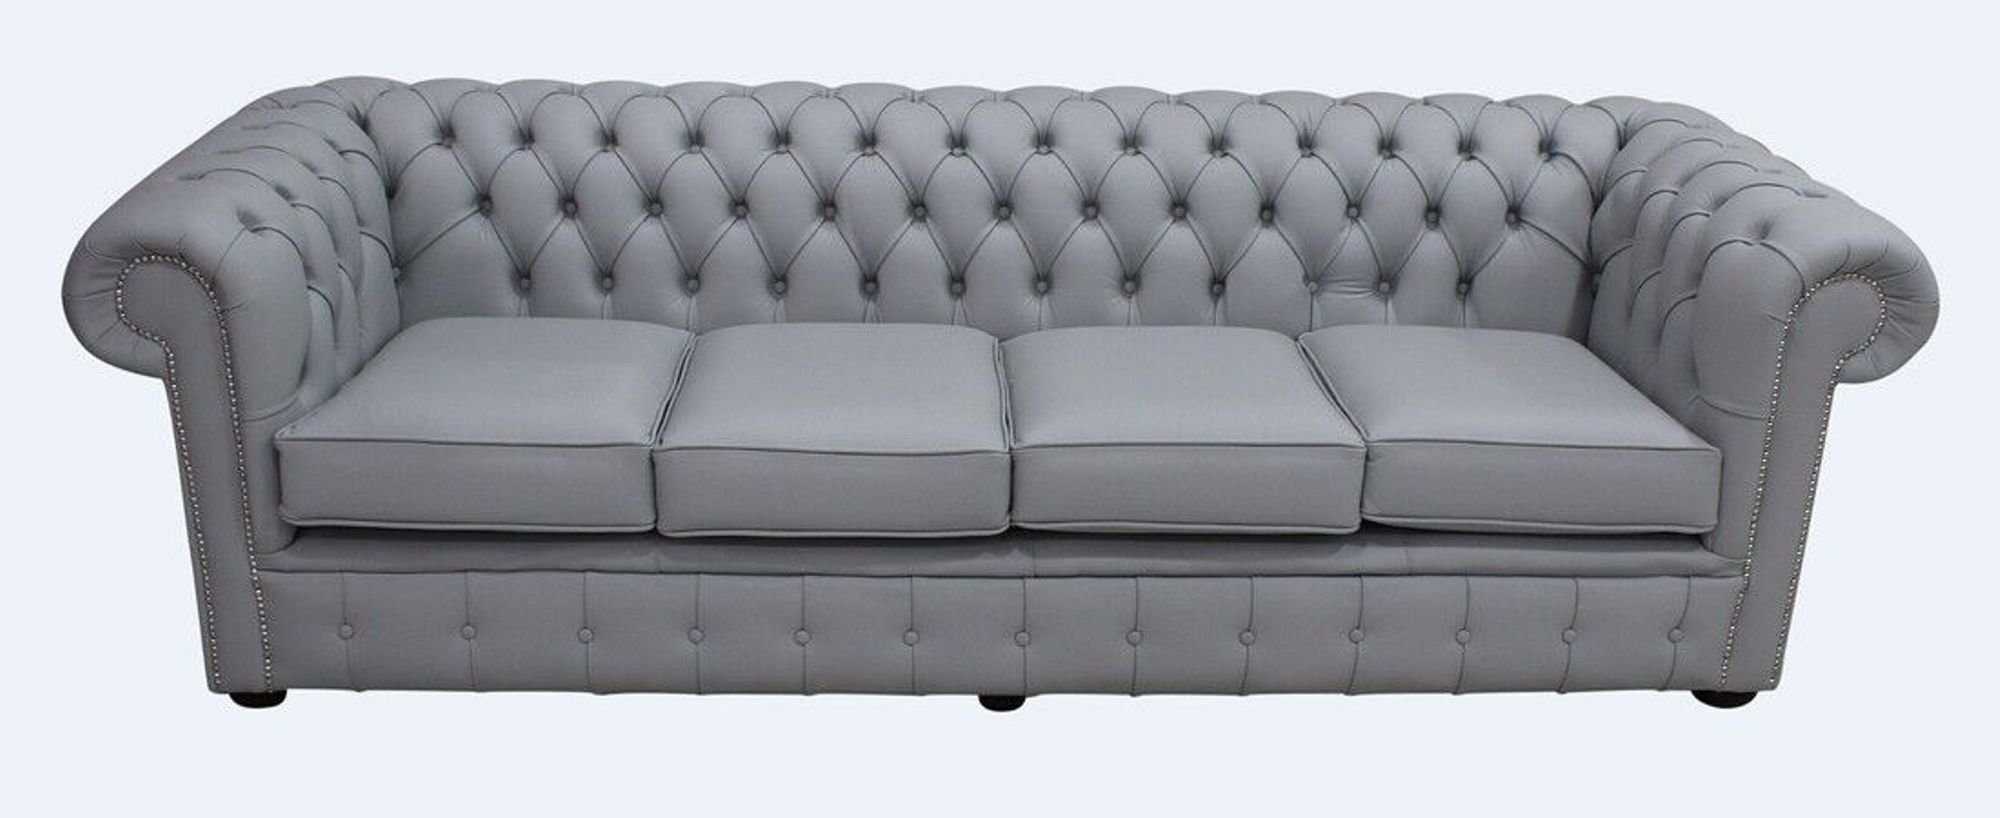 JVmoebel Chesterfield-Sofa, Chesterfield Design Luxus Couch Polster Sofa Garnitur Sitz